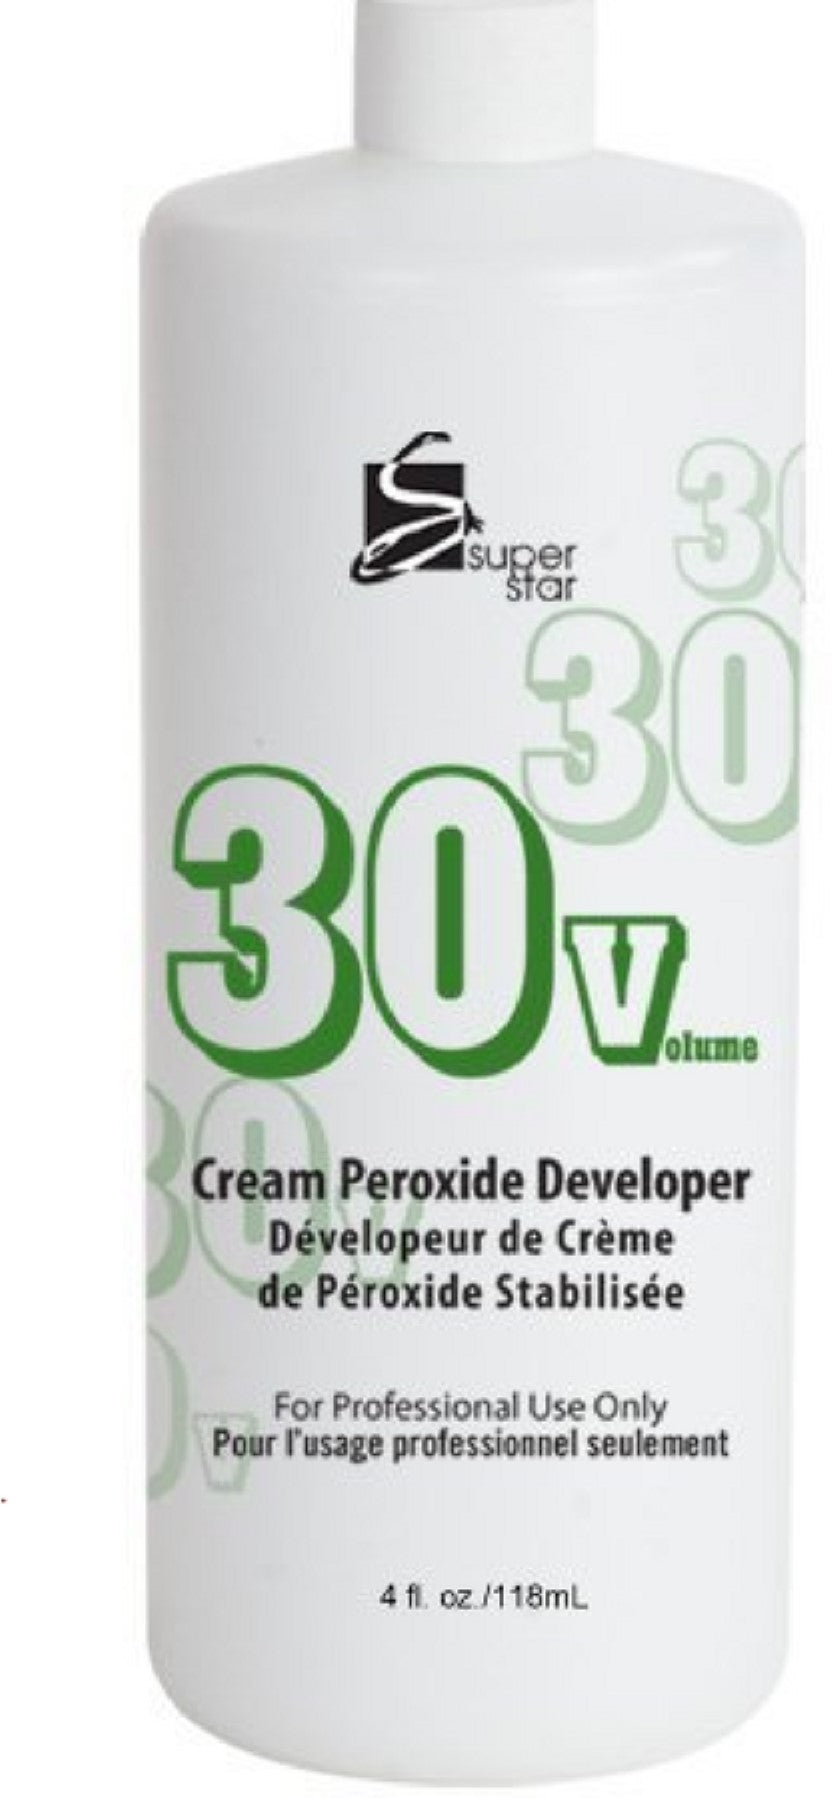 Superstar Cream Peroxide Developer 30 - Beauty Bar & Supply